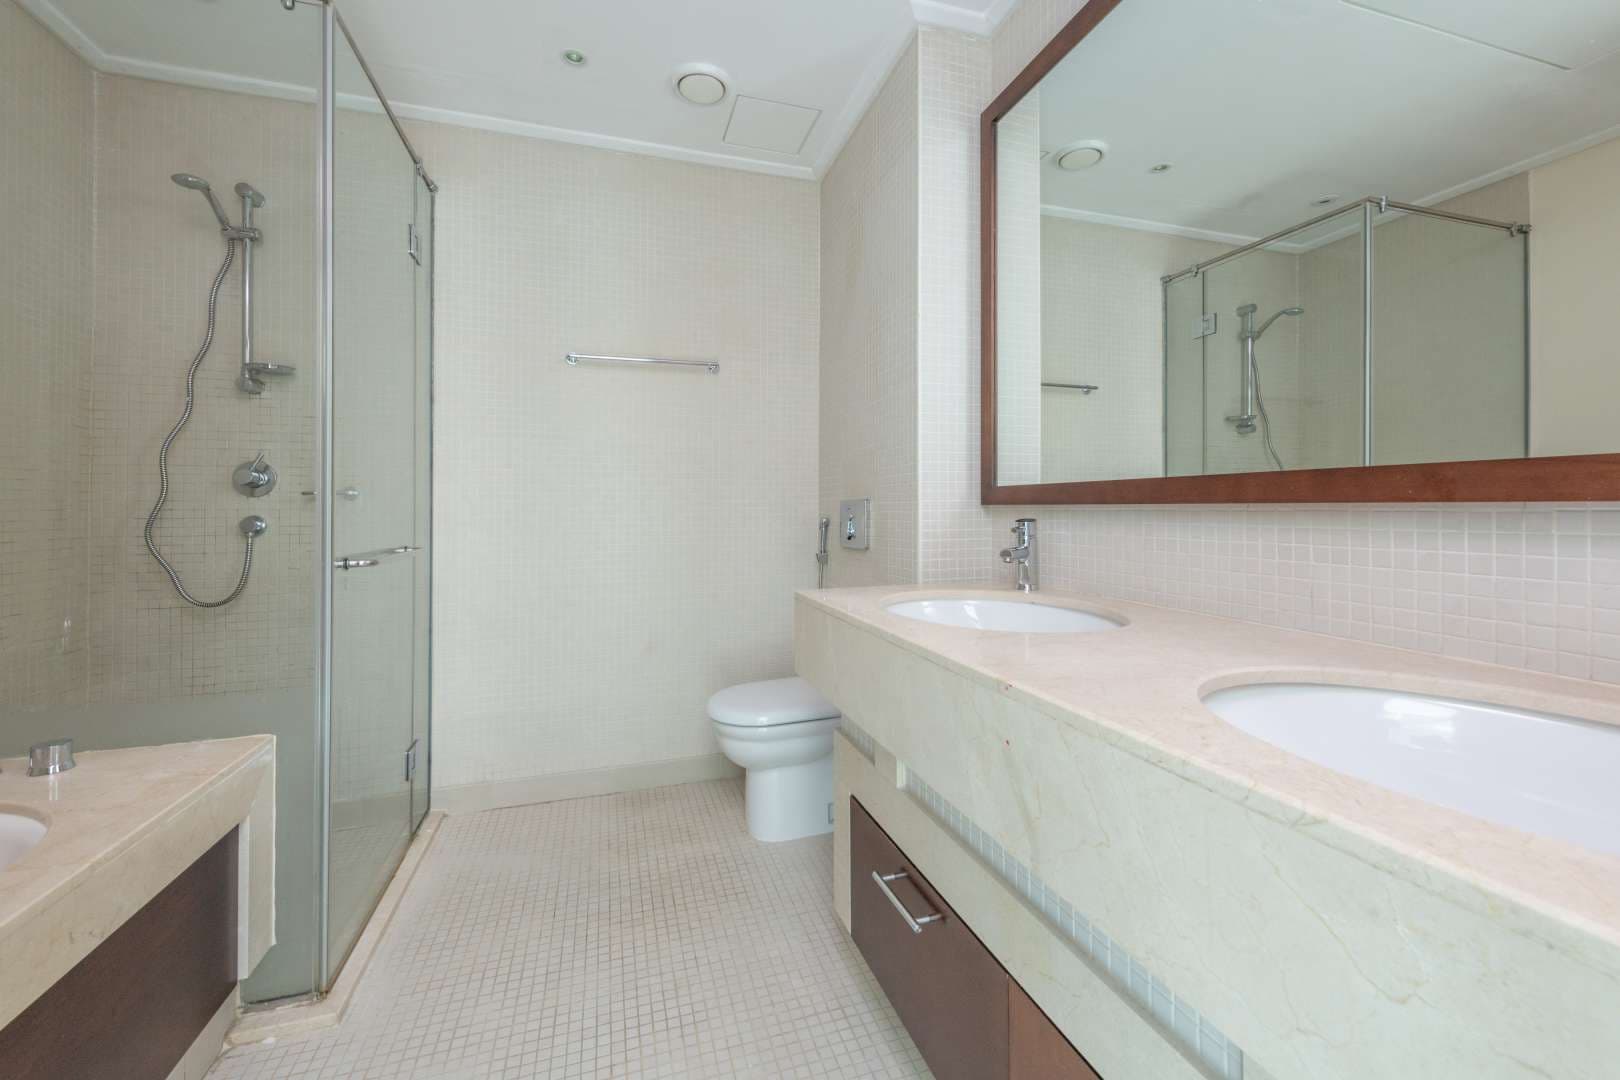 2 Bedroom Apartment For Rent Marina Promenade Lp04956 D8b2a377bbd4d80.jpg